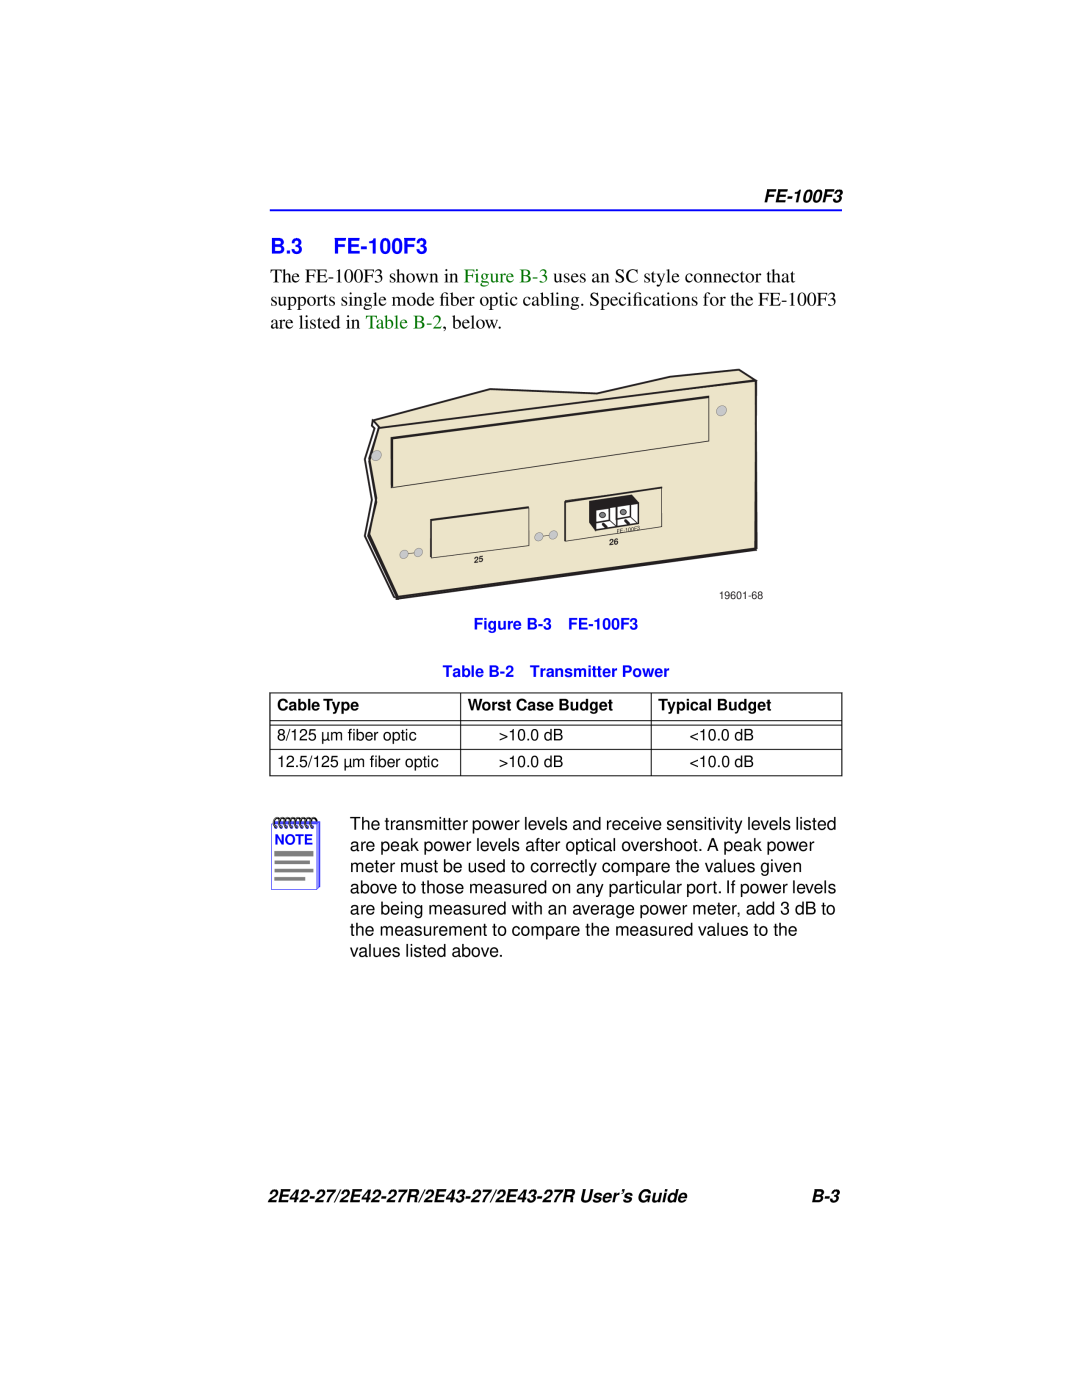 Cabletron Systems manual B.3 FE-100F3, 2E42-27/2E42-27R/2E43-27/2E43-27R User’s Guide 